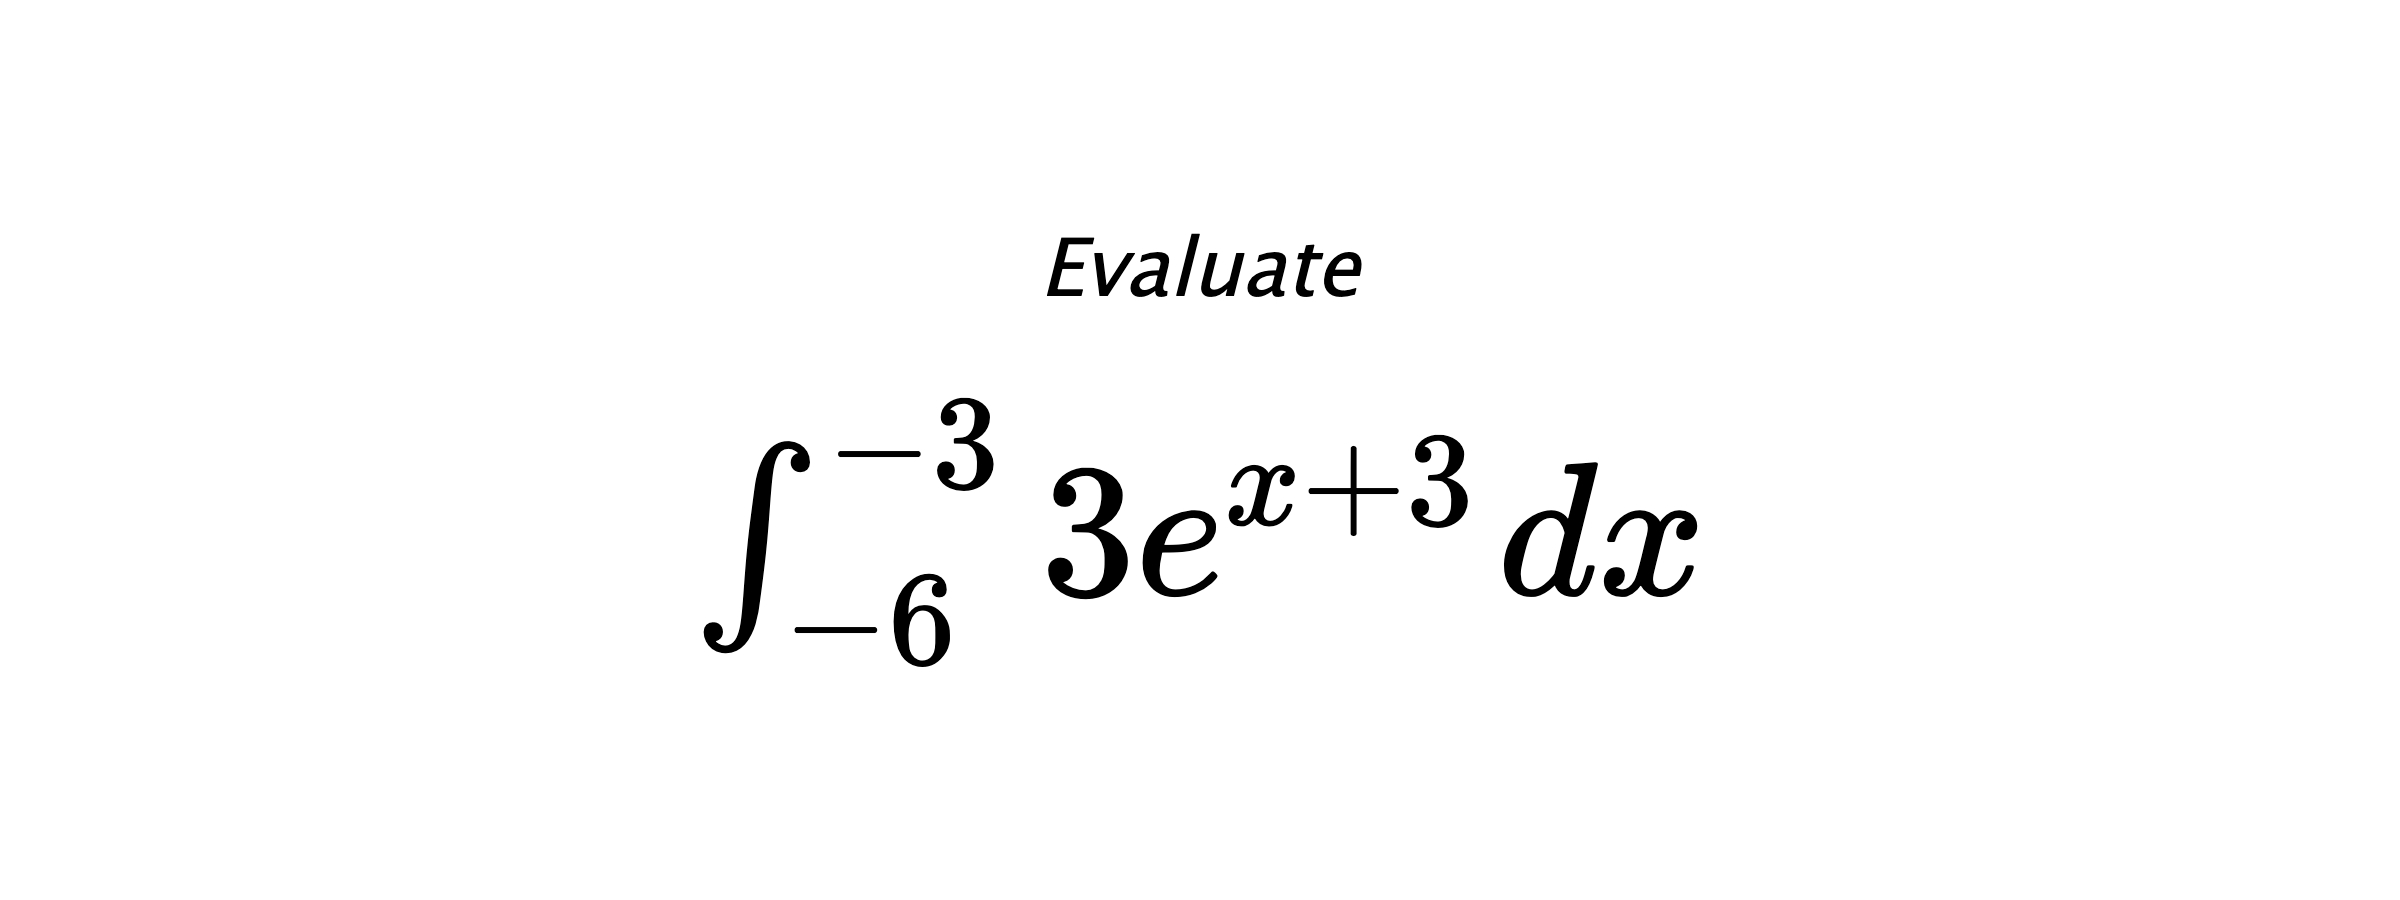 Evaluate $ \int_{-6}^{-3} 3e^{x+3} \hspace{0.2cm} dx $